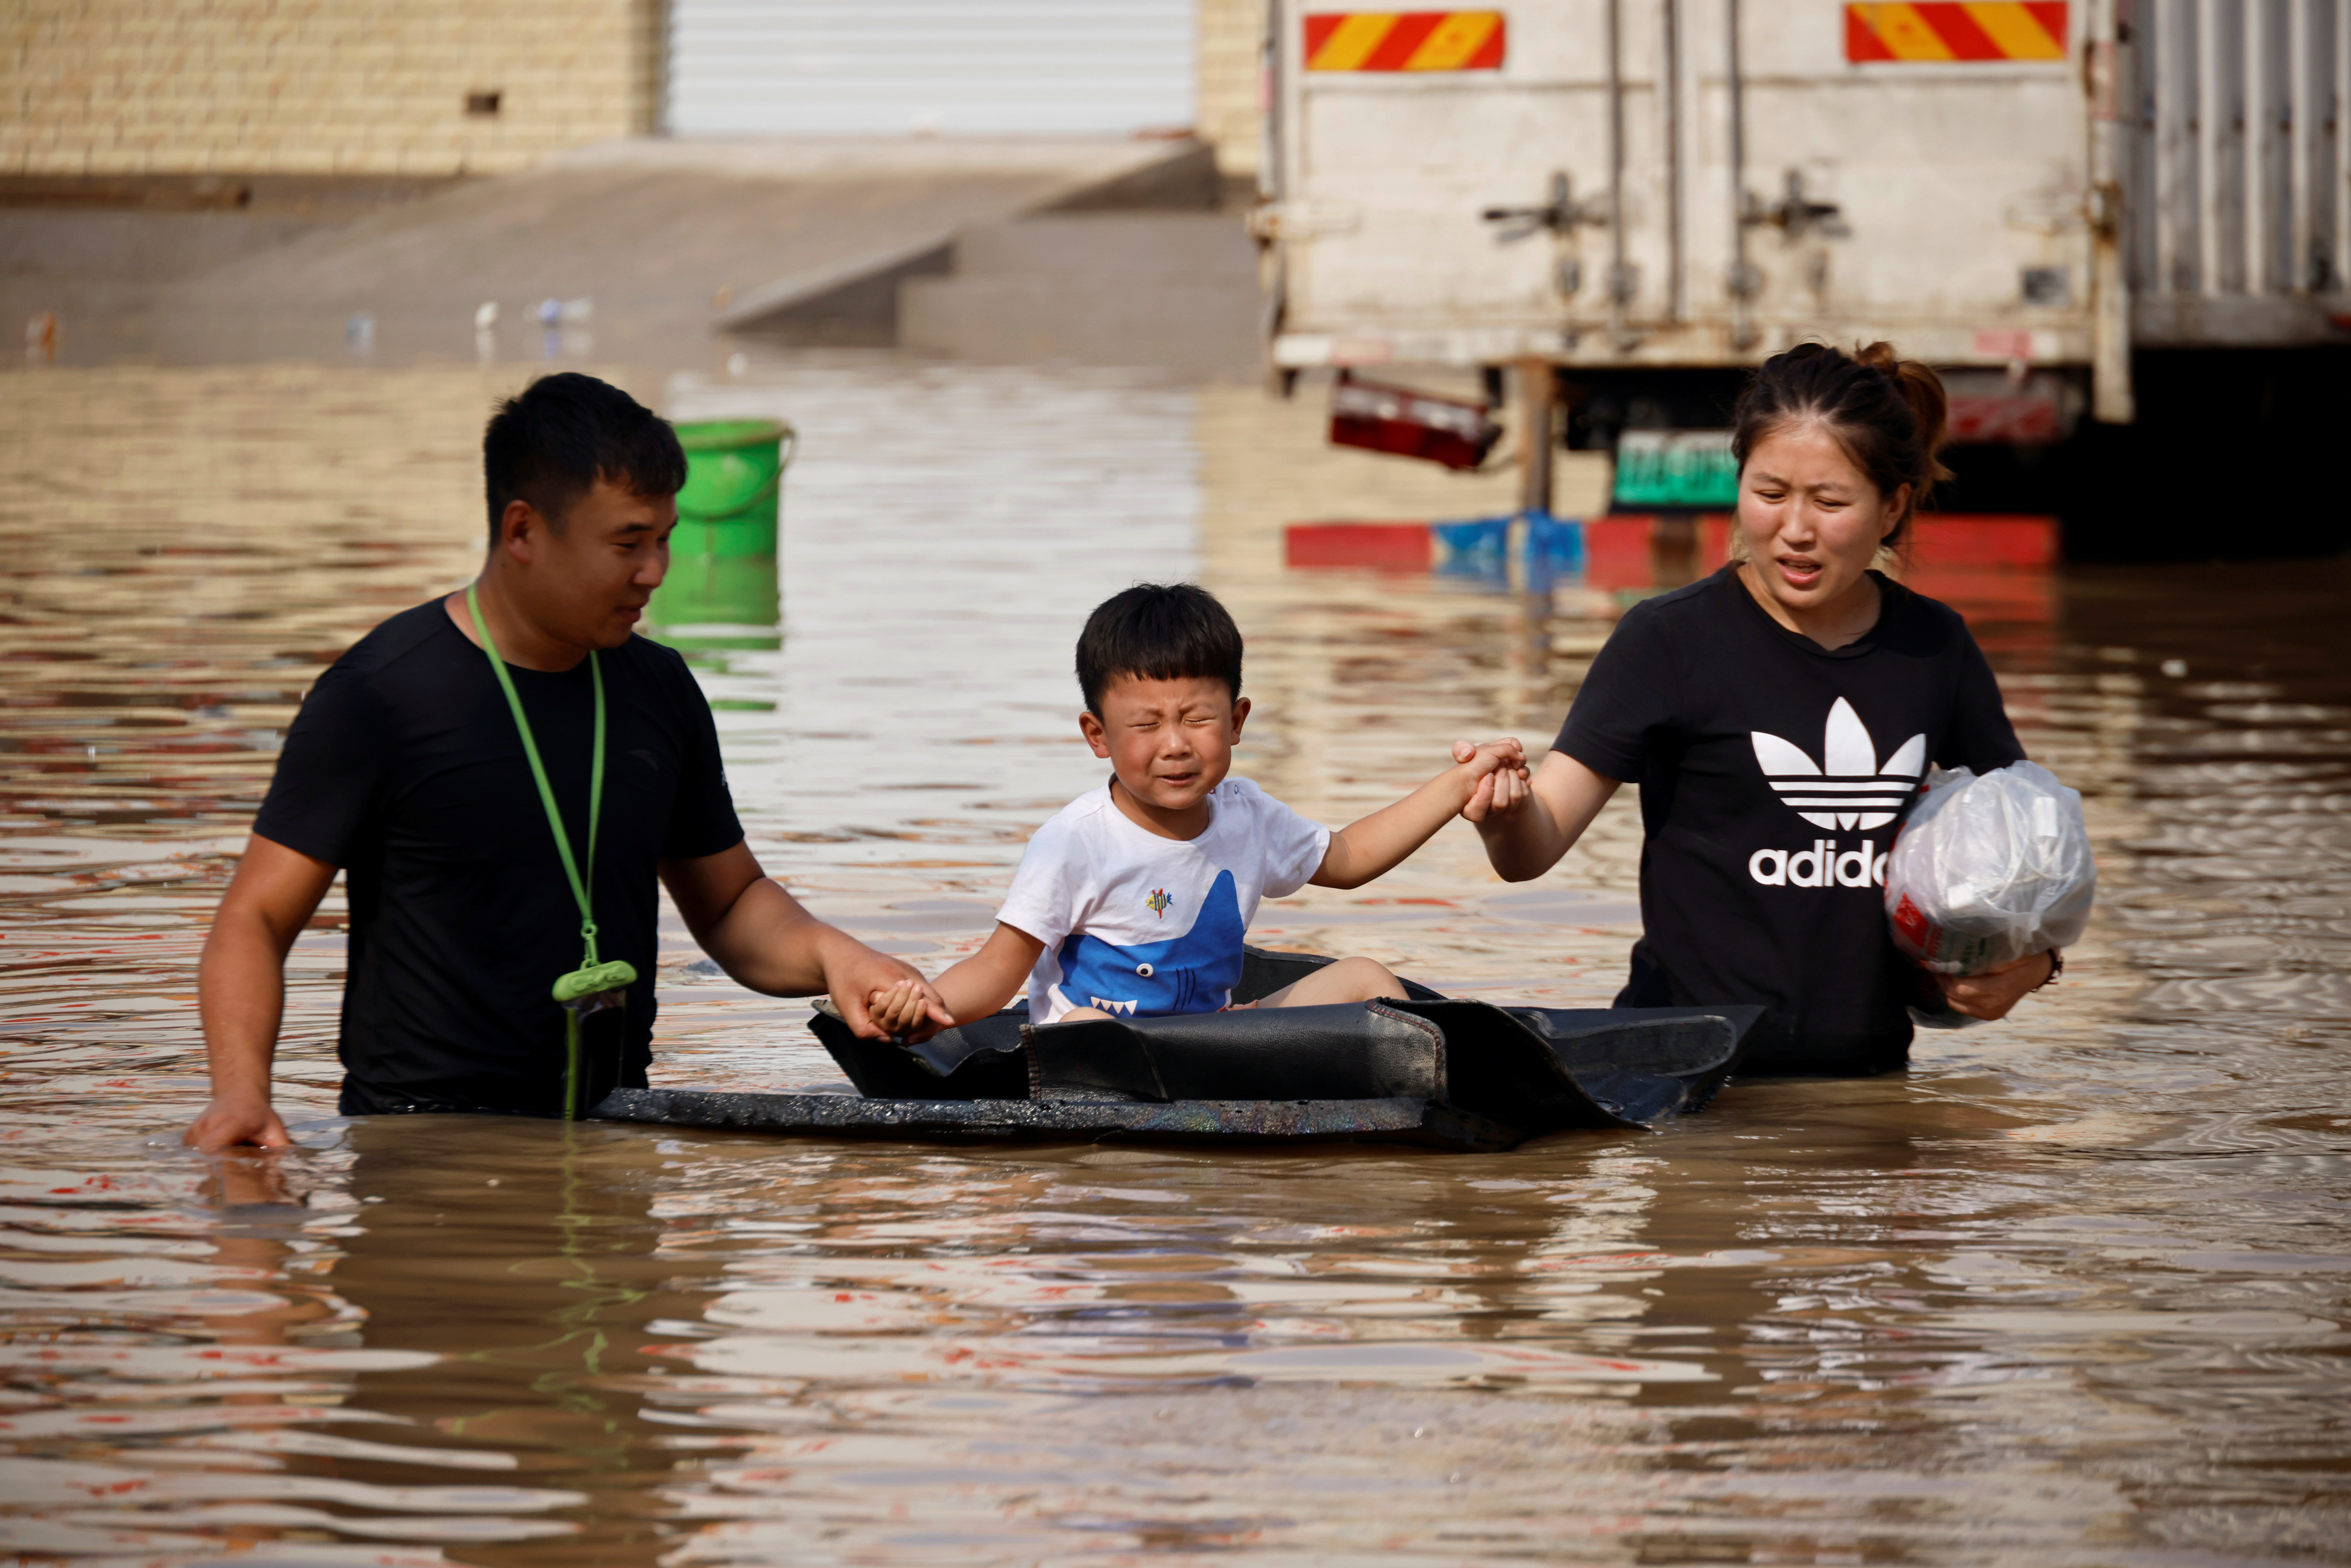 “จีน” น้ำท่วมใหญ่ เสียชีวิต 33 คน เศรษฐกิจเสียหาย 6 พันล้าน – ต่างประเทศ